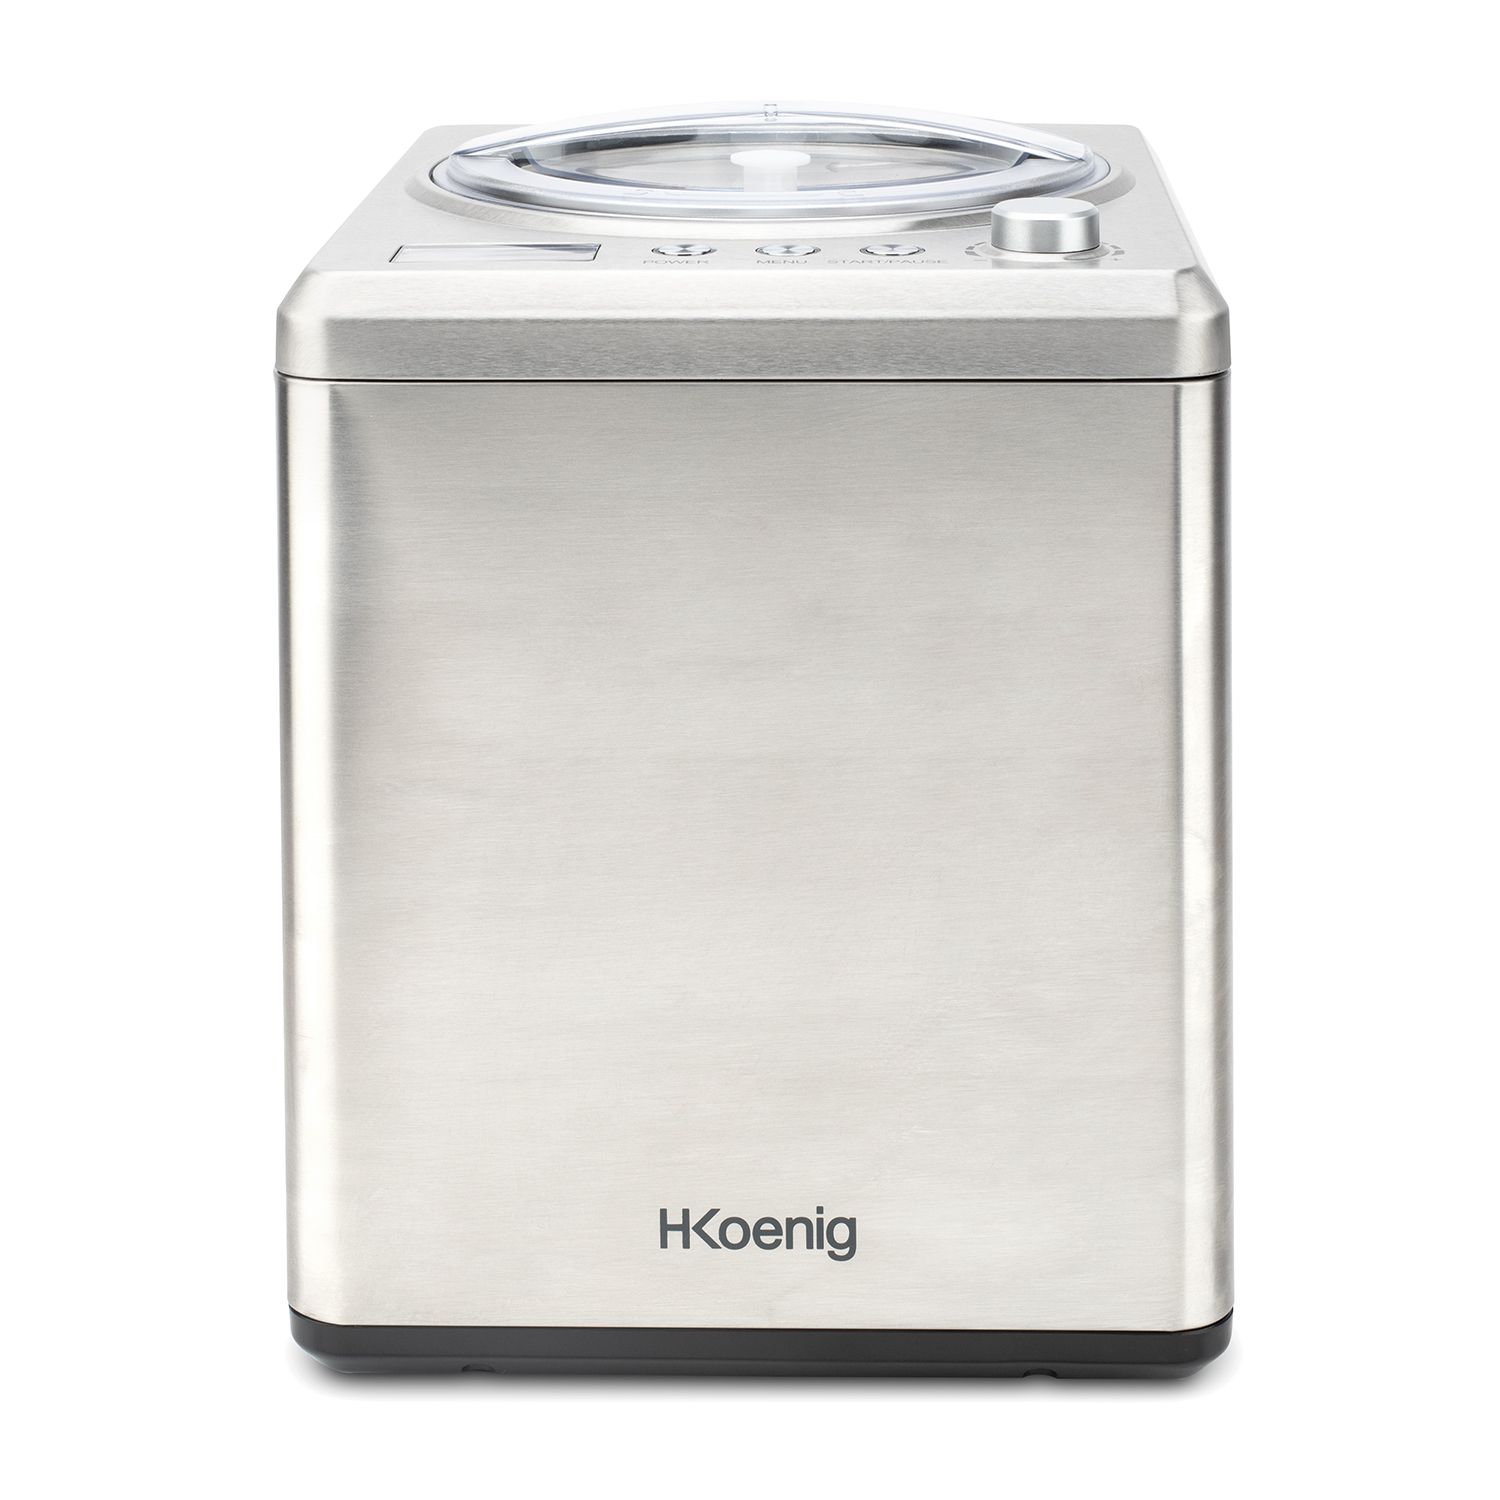 H.KOENIG H.Koenig professionelle Eismaschine HF340 (180 Sorbet 2 L / Kühlfunktion W Eiscrememaschine / 180 Joghurt, Eis, / Watt, Silber) / Frozen